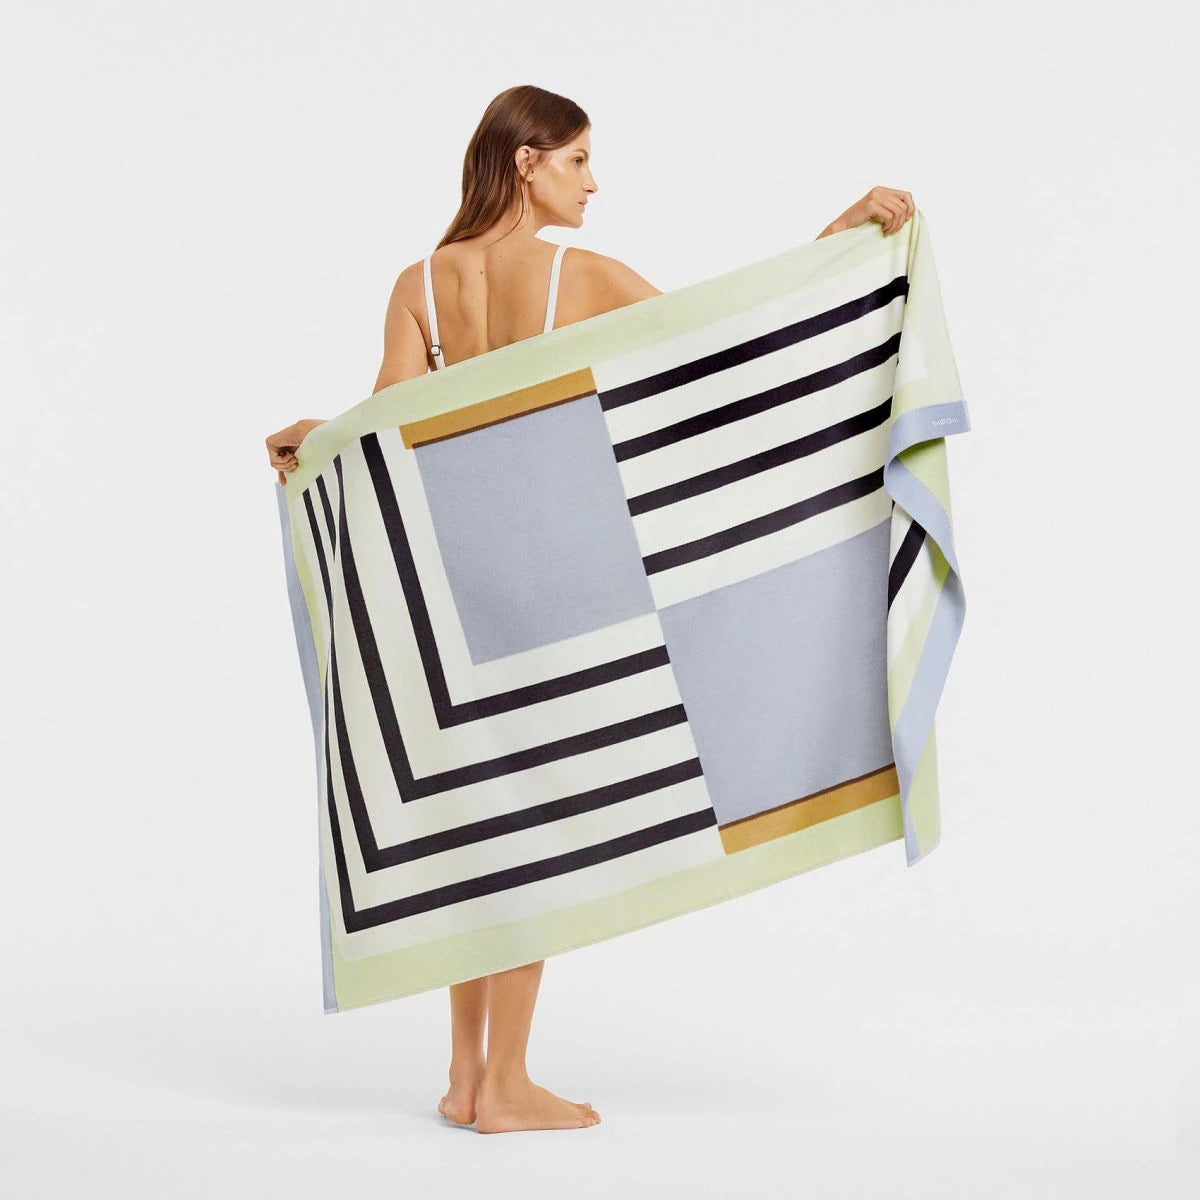 Sheridan Anteo Beach Towel